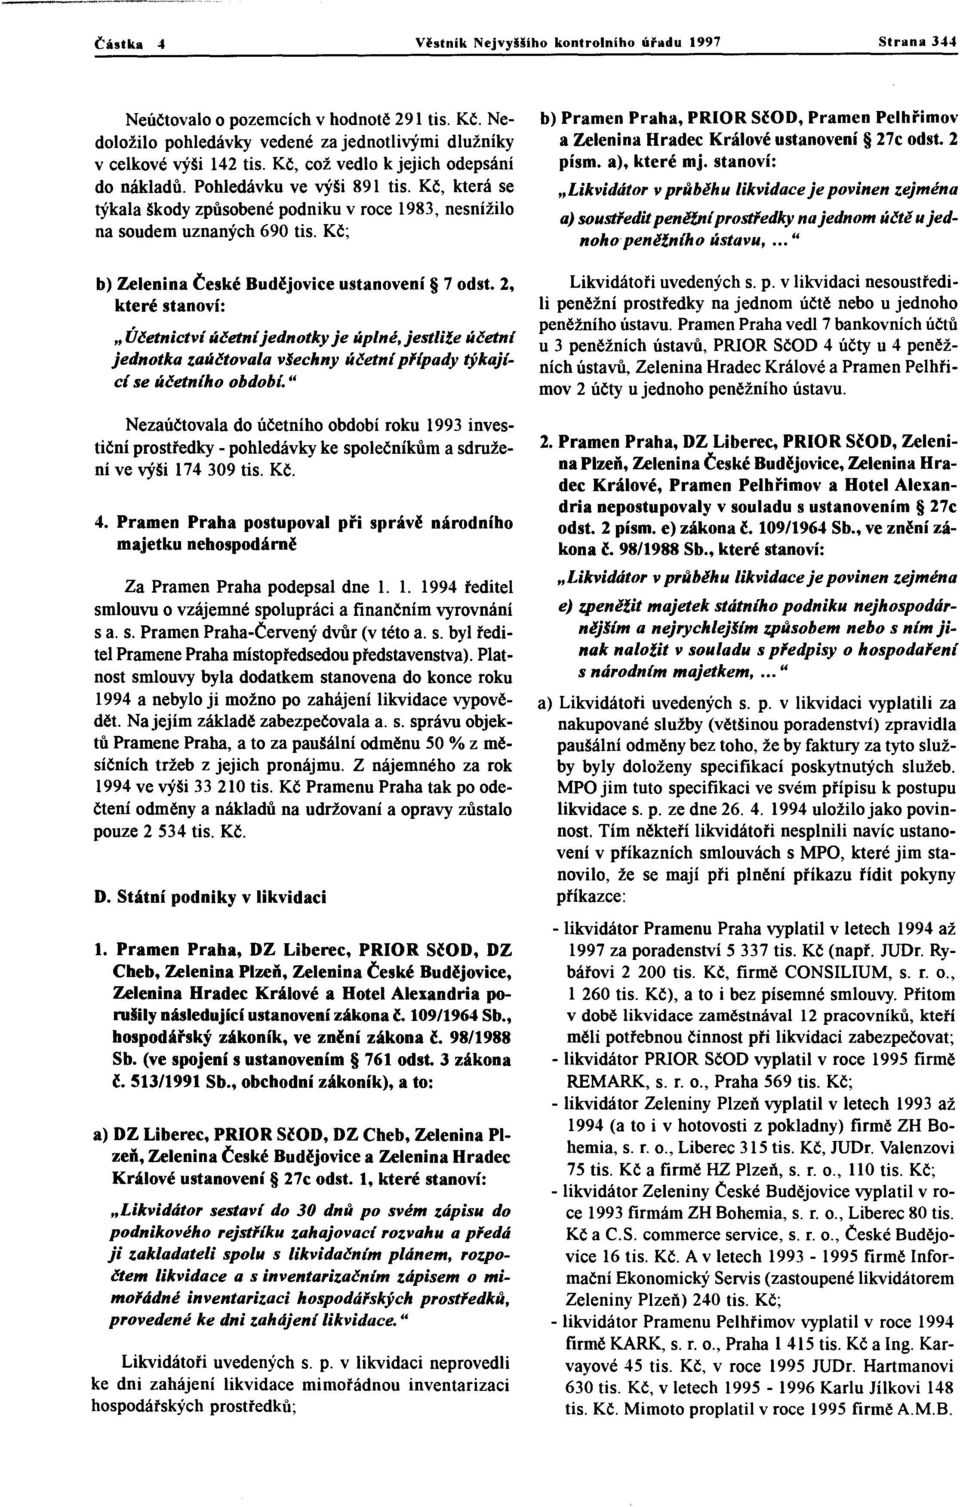 Kč; b) Zelenina České Budějoviceustanovení 7 odst. 2, které stanoví: " Účetnictví účetníjednotkyje úplné,jestliže účetní jednotka zaúčtovalavšechny účetnípfípady týkající se účetního období.